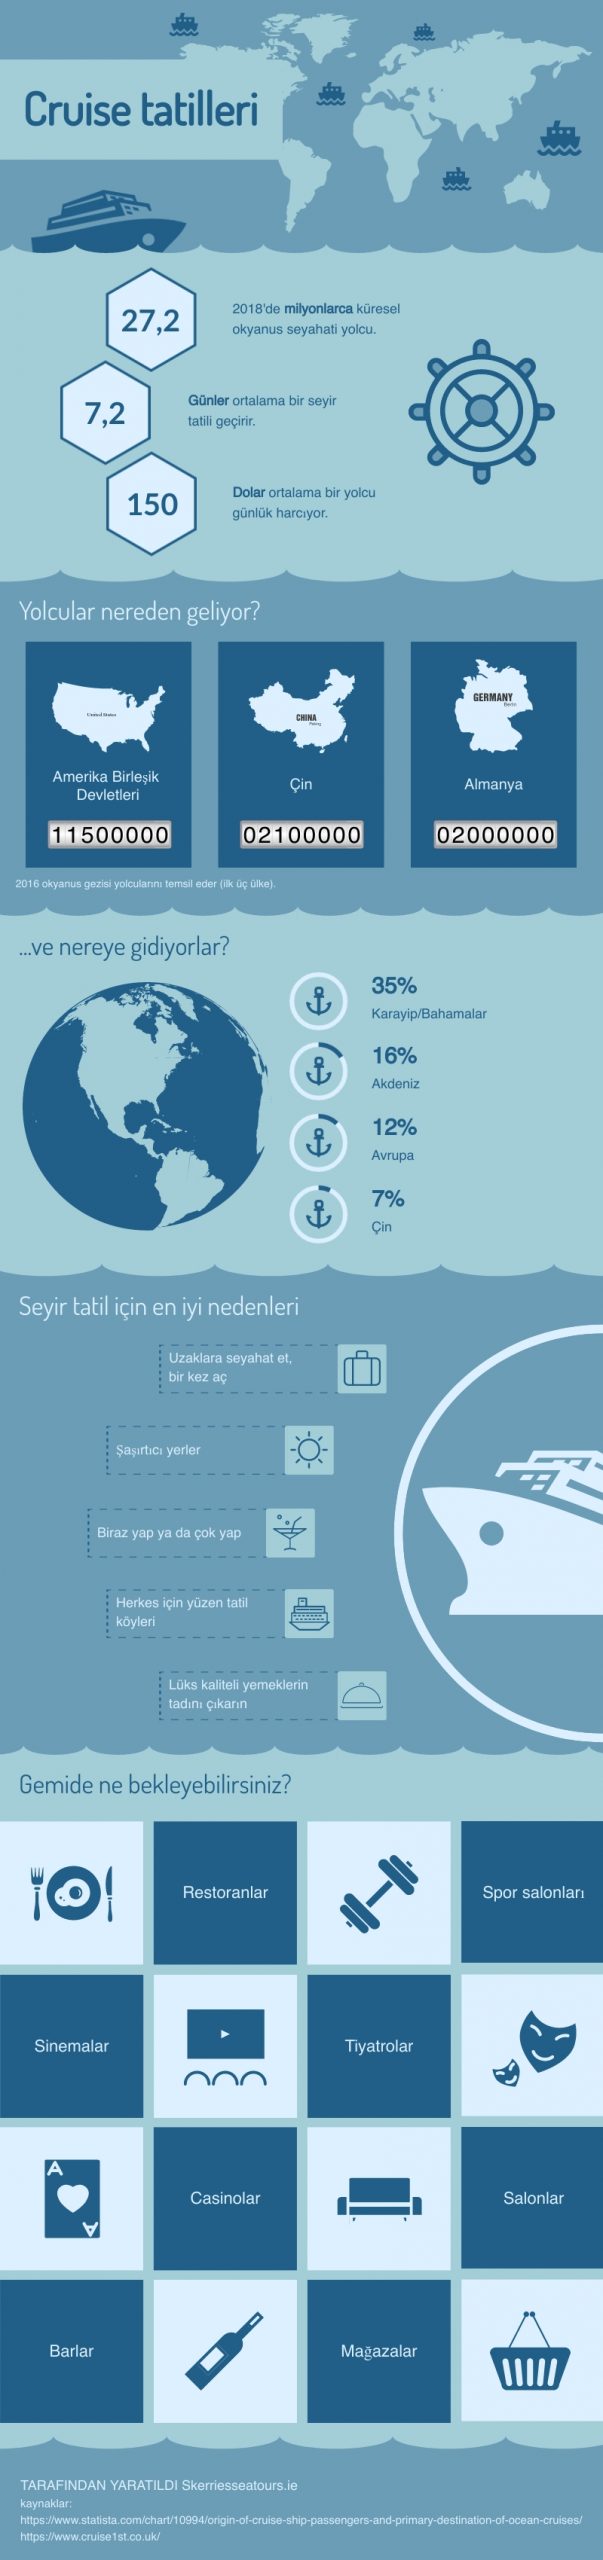 Cruise tatilleri infografik